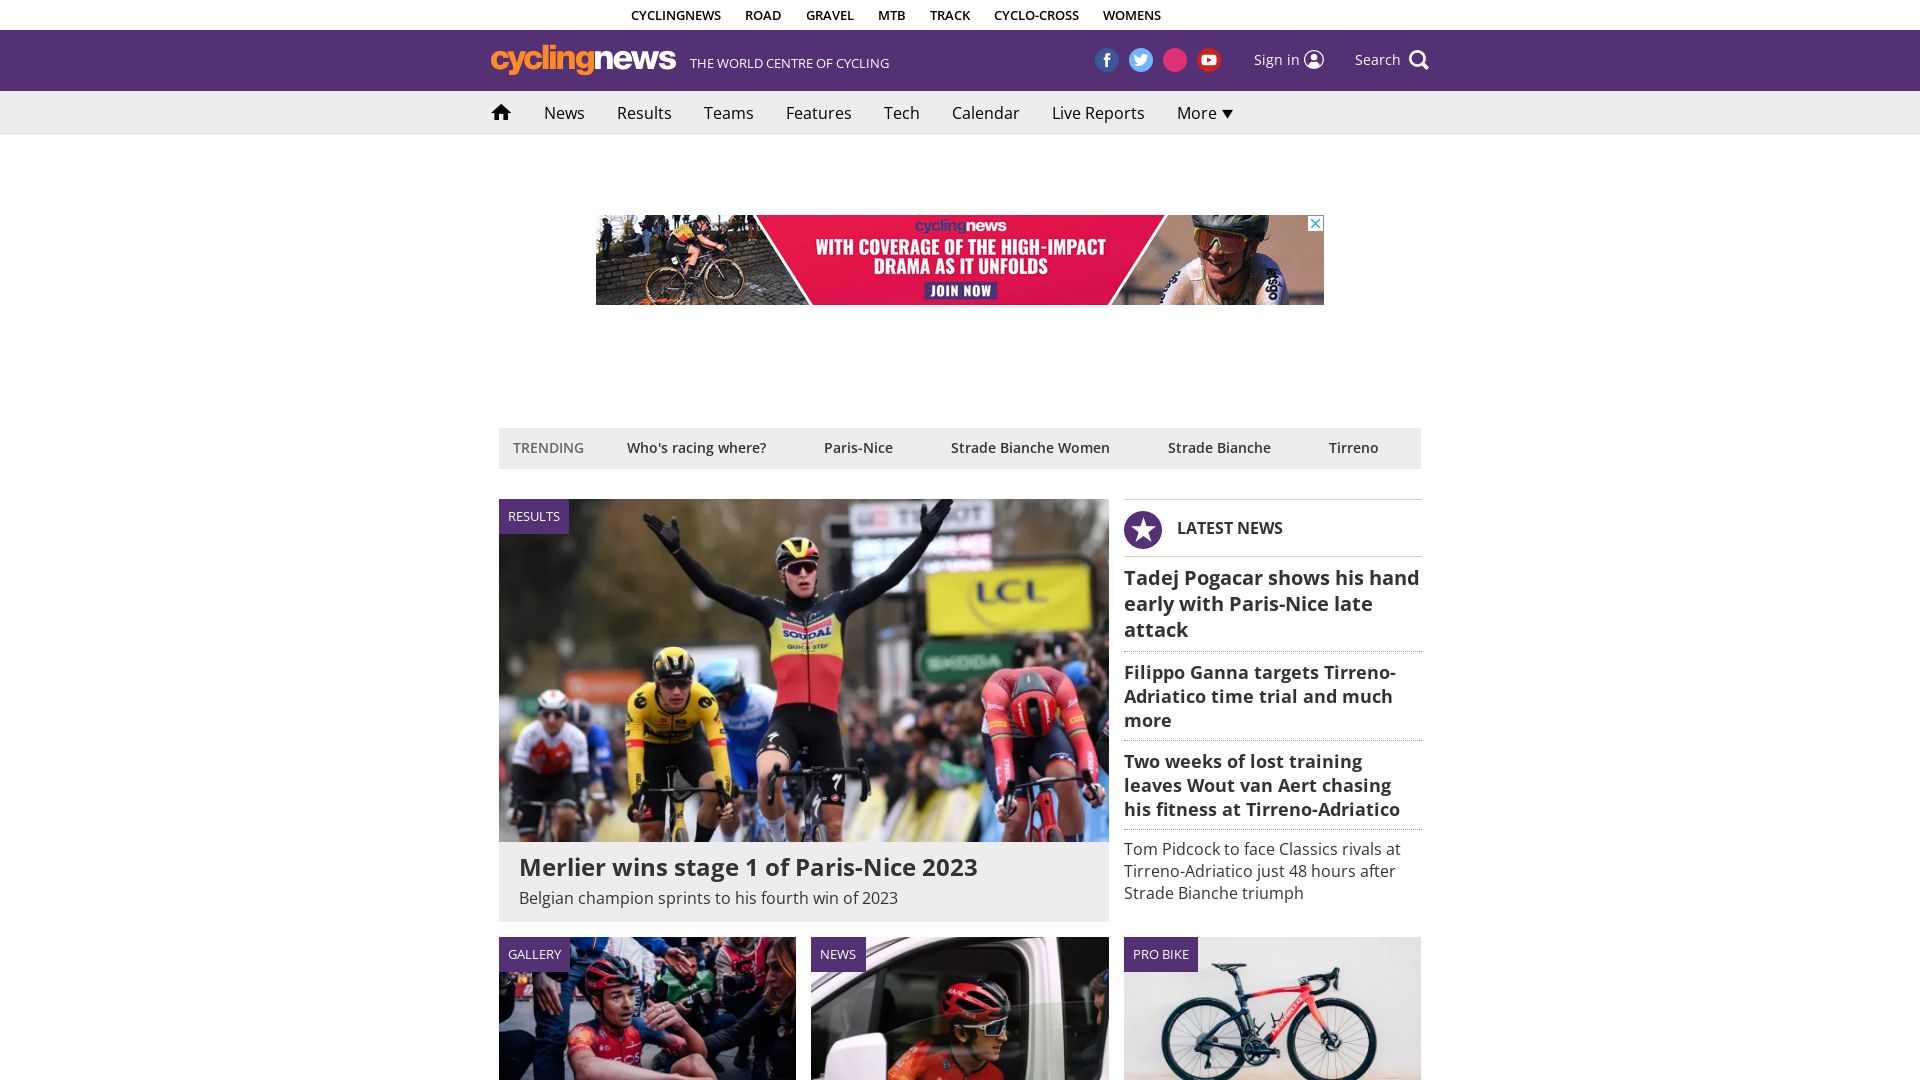 Estado web cyclingnews.com está   ONLINE